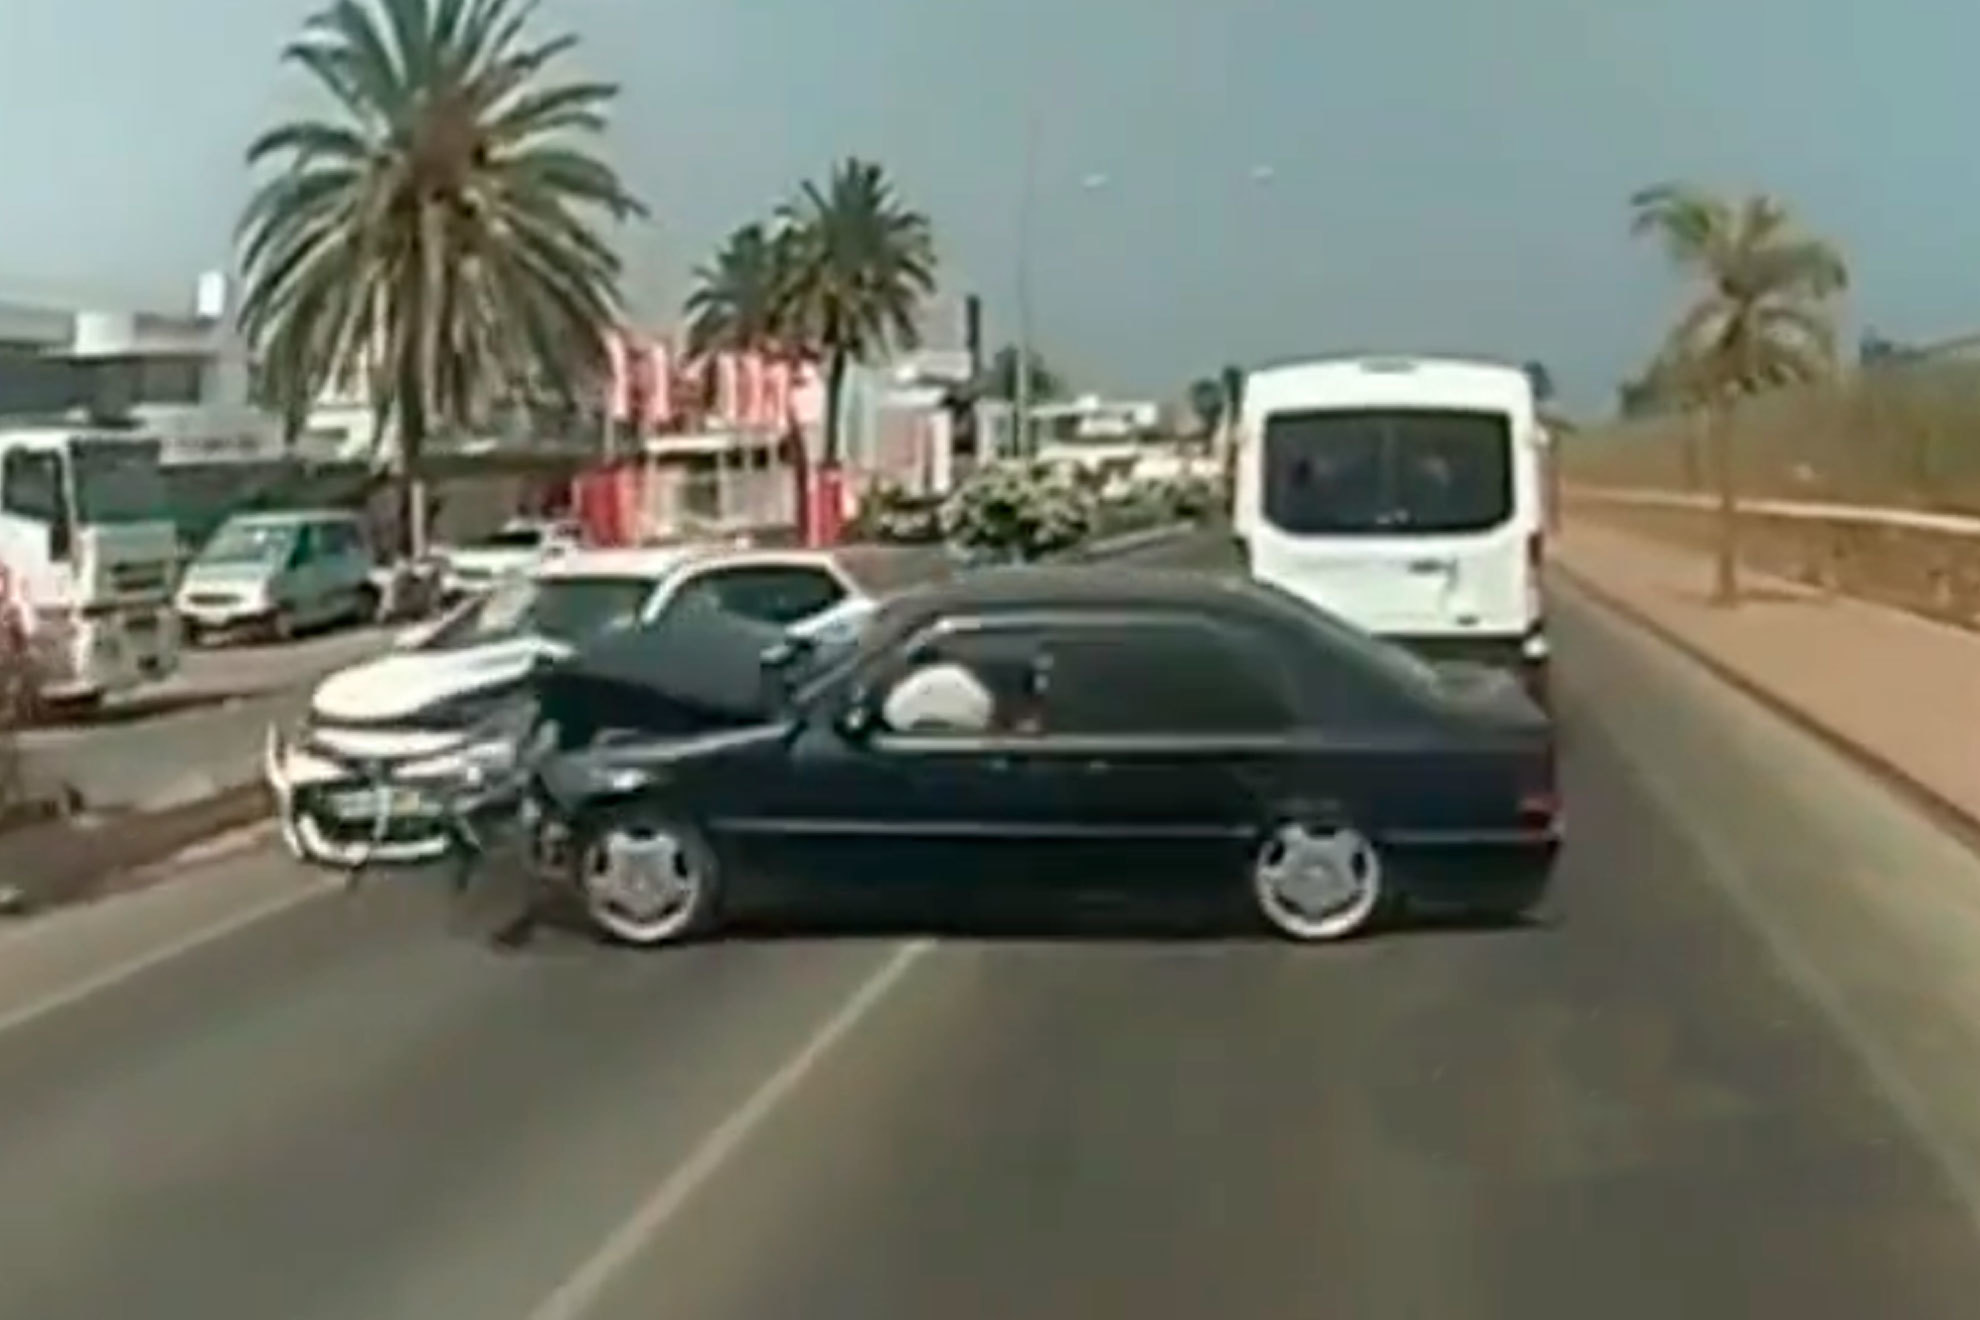 Momento en el que impactan ambos vehículos después de que el Mercedes invada el carril contrario.